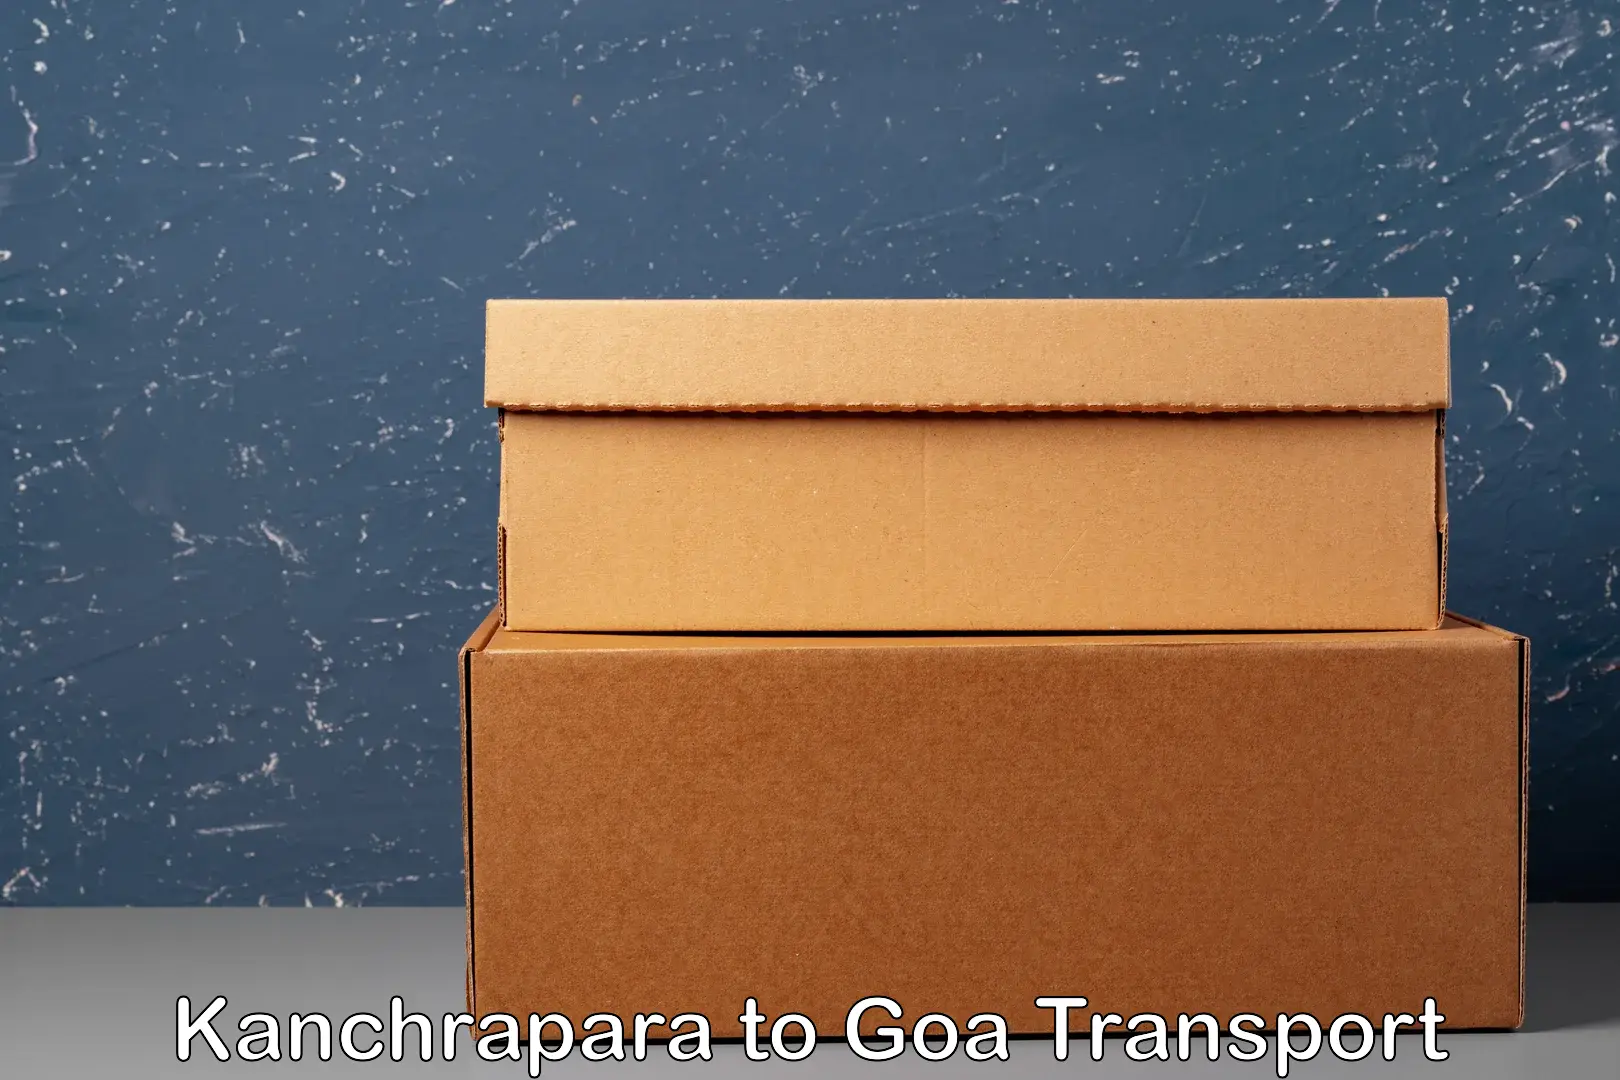 India truck logistics services Kanchrapara to Goa